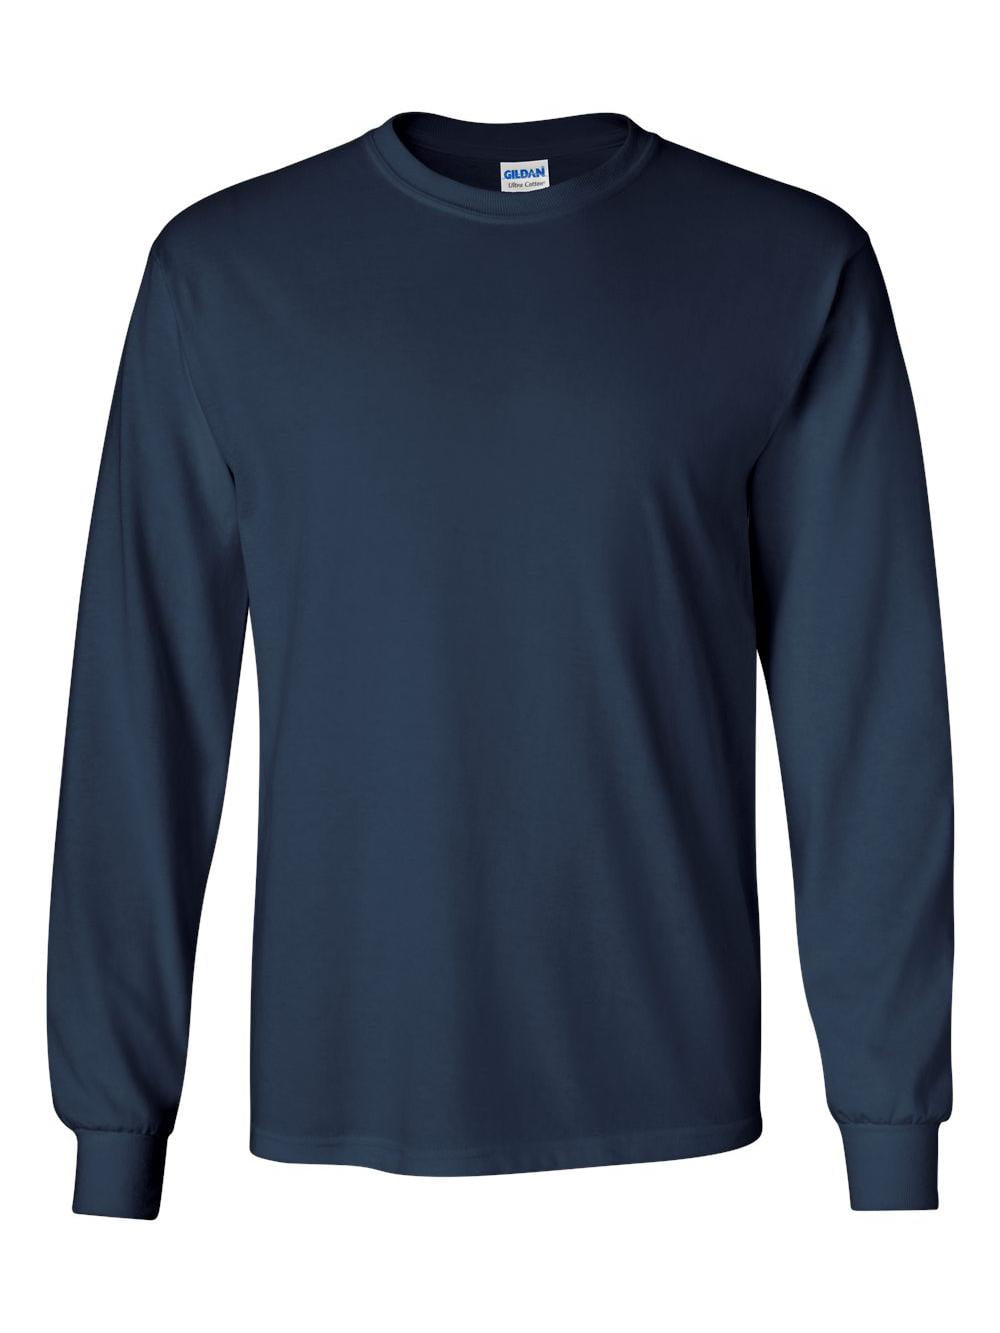 Gildan Men's Ultra Cotton Long Sleeve T Shirt   Walmart.com